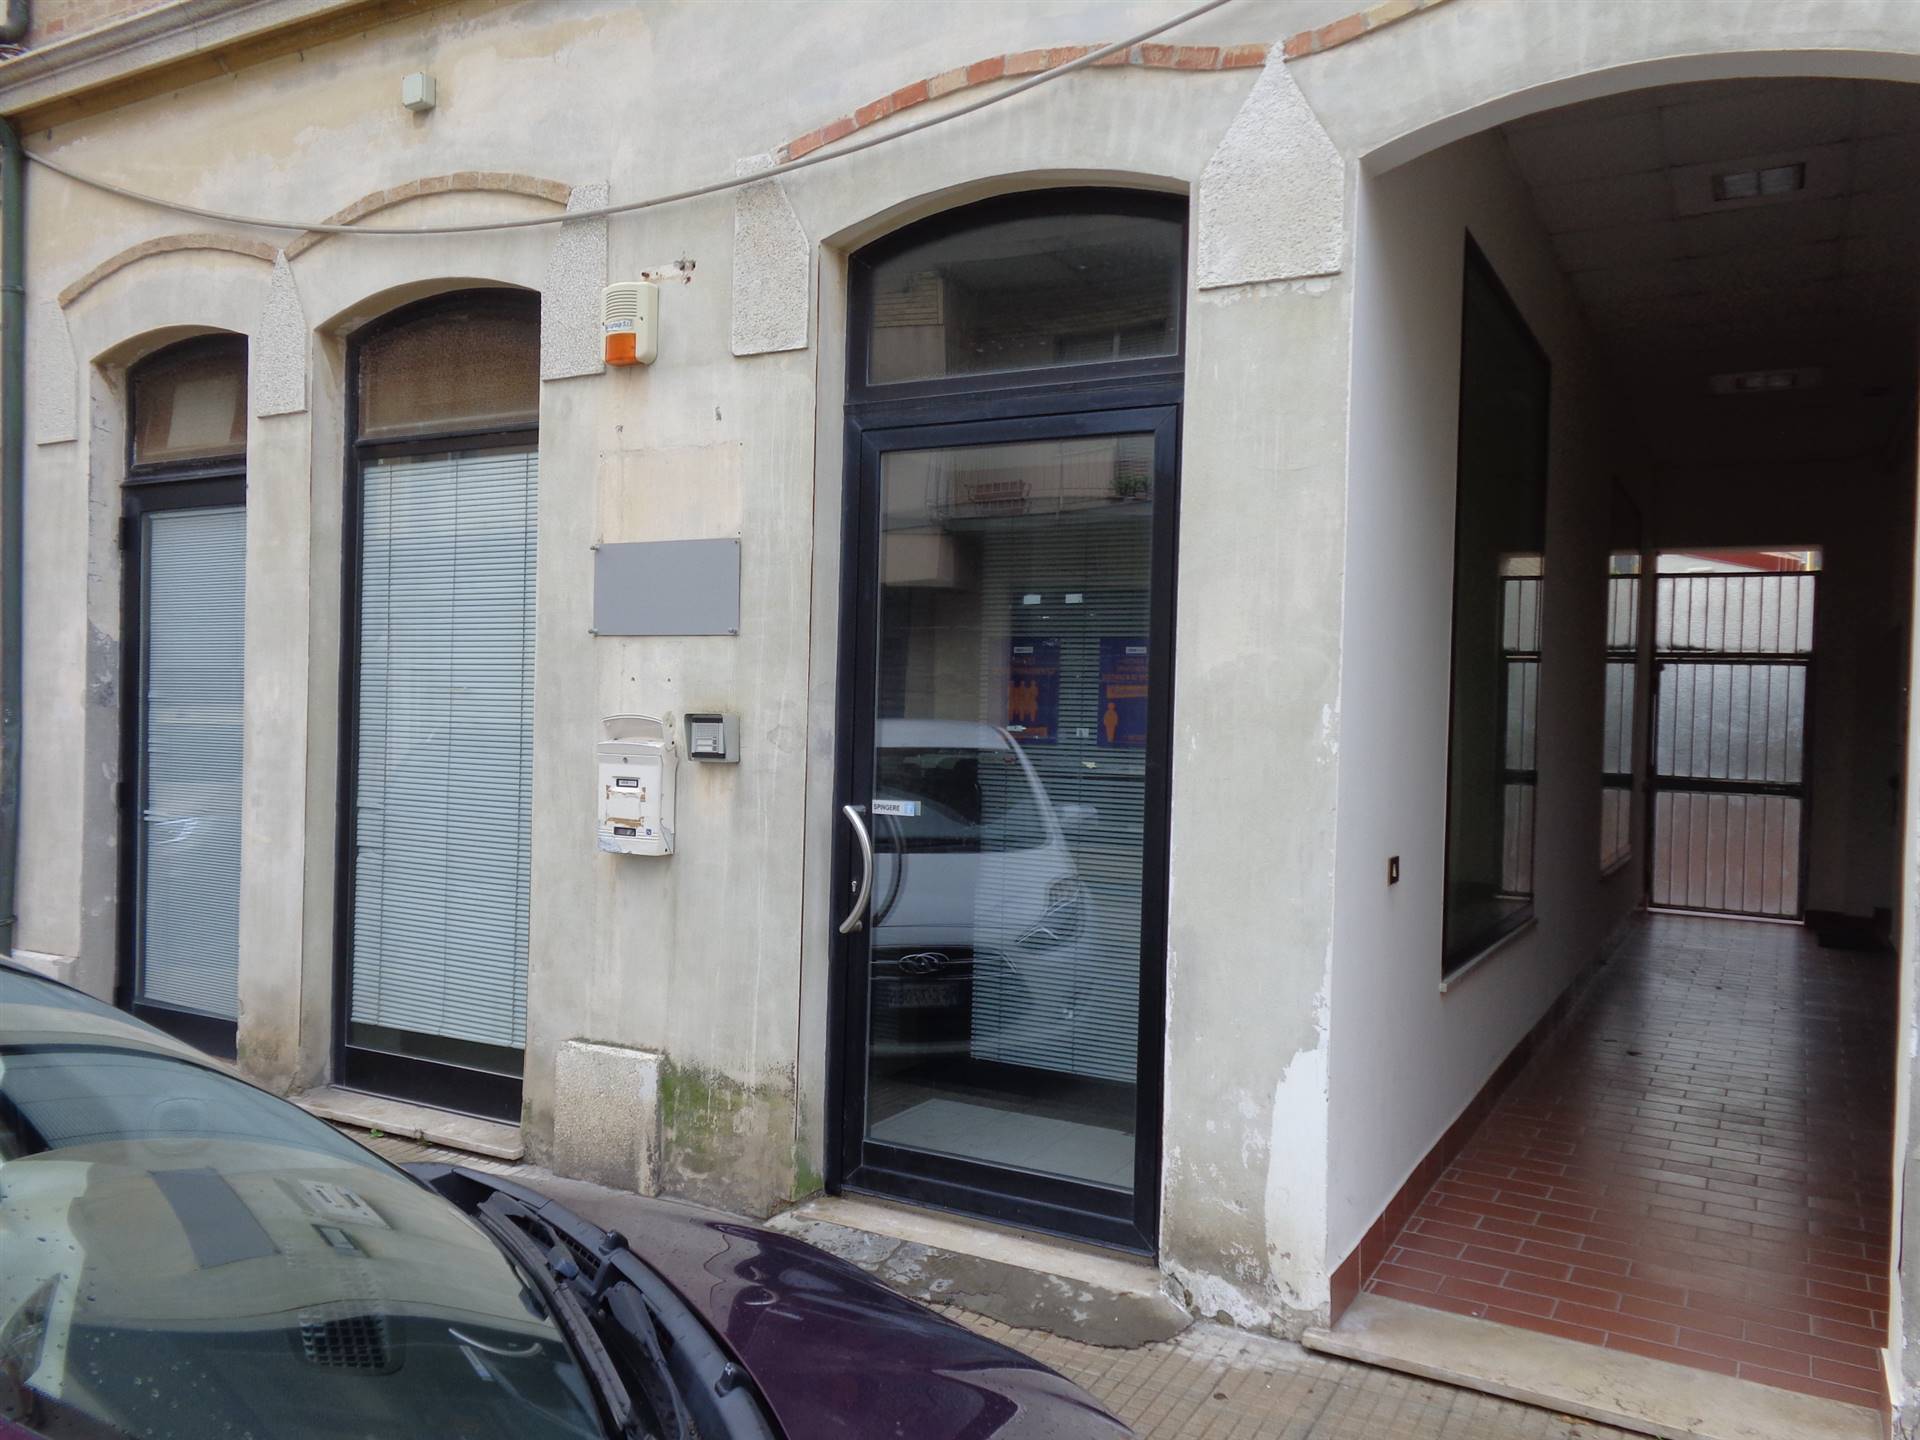 Ufficio / Studio in affitto a Falconara Marittima, 4 locali, zona Zona: Centro, prezzo € 1.300 | CambioCasa.it